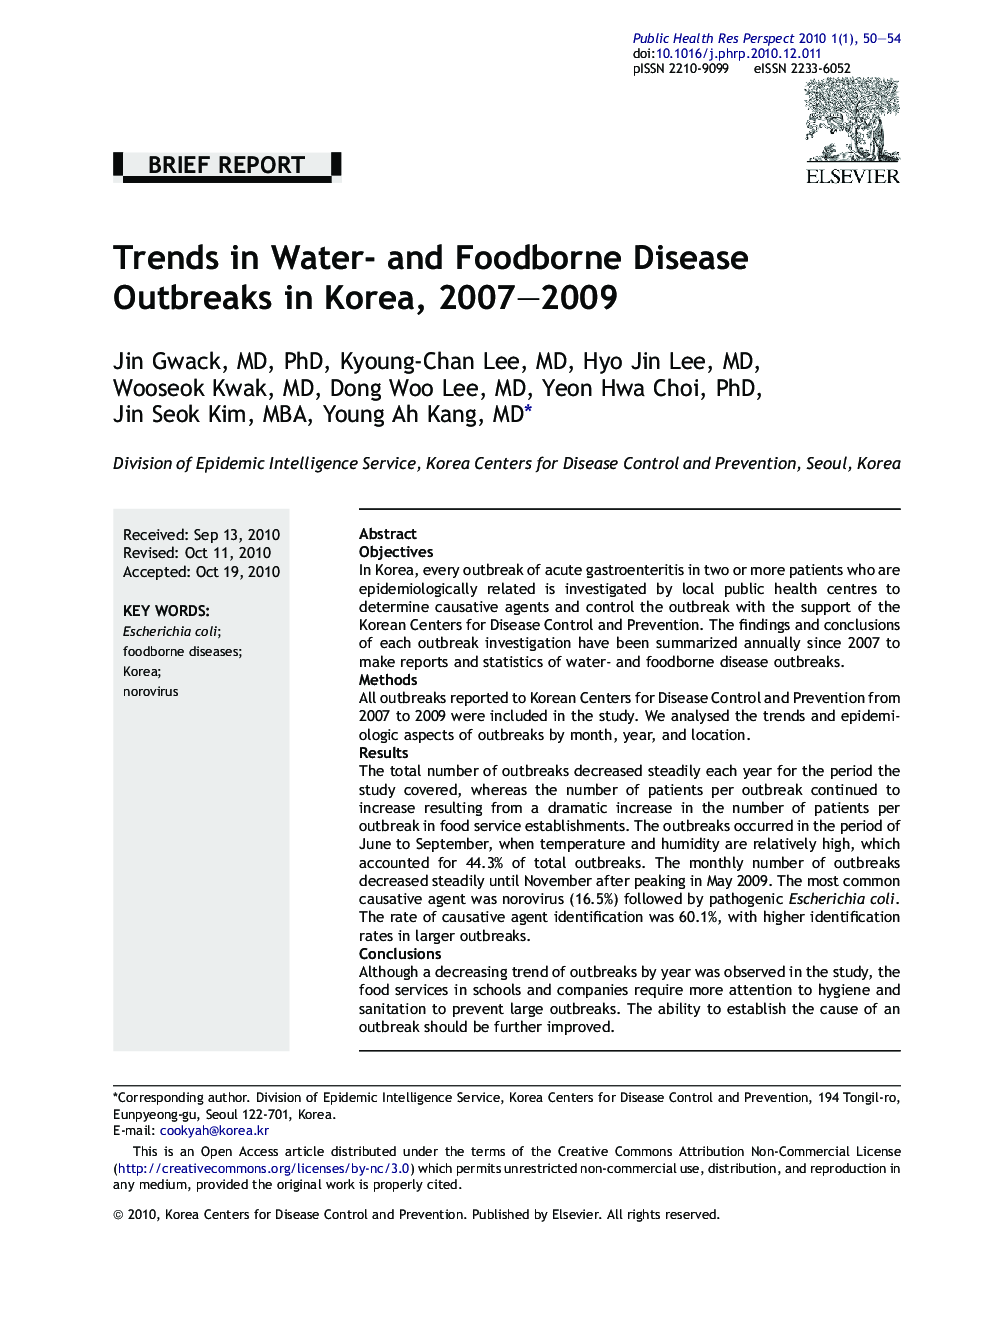 Trends in Water- and Foodborne Disease Outbreaks in Korea, 2007–2009 